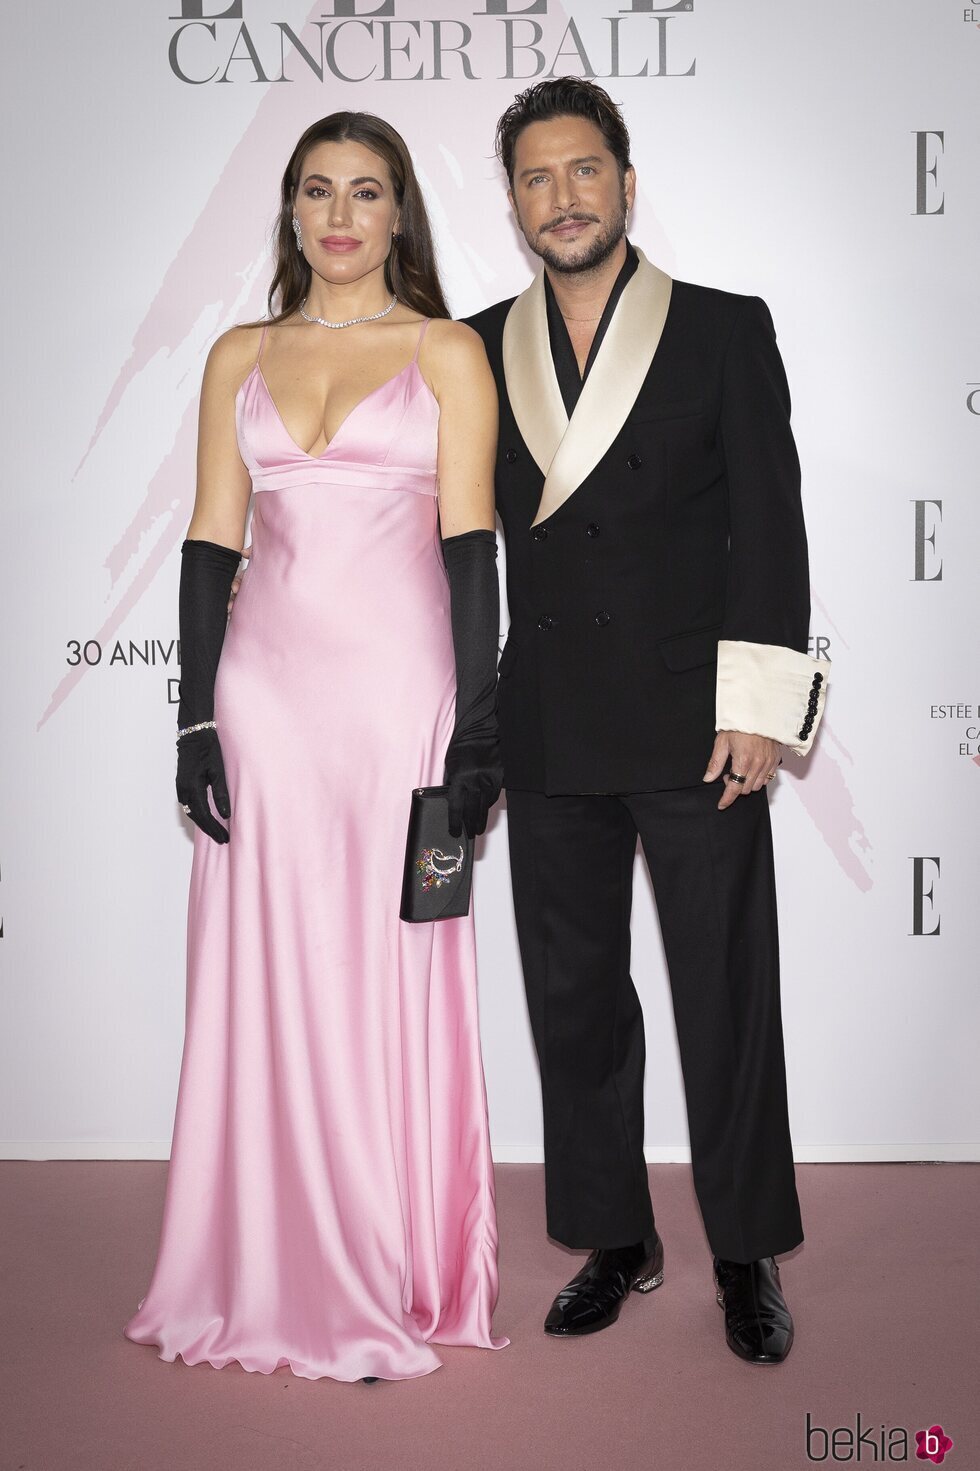 Manuel Carrasco y Almudena Navalón en la gala solidaria 'Cancer Ball' organizada por Elle